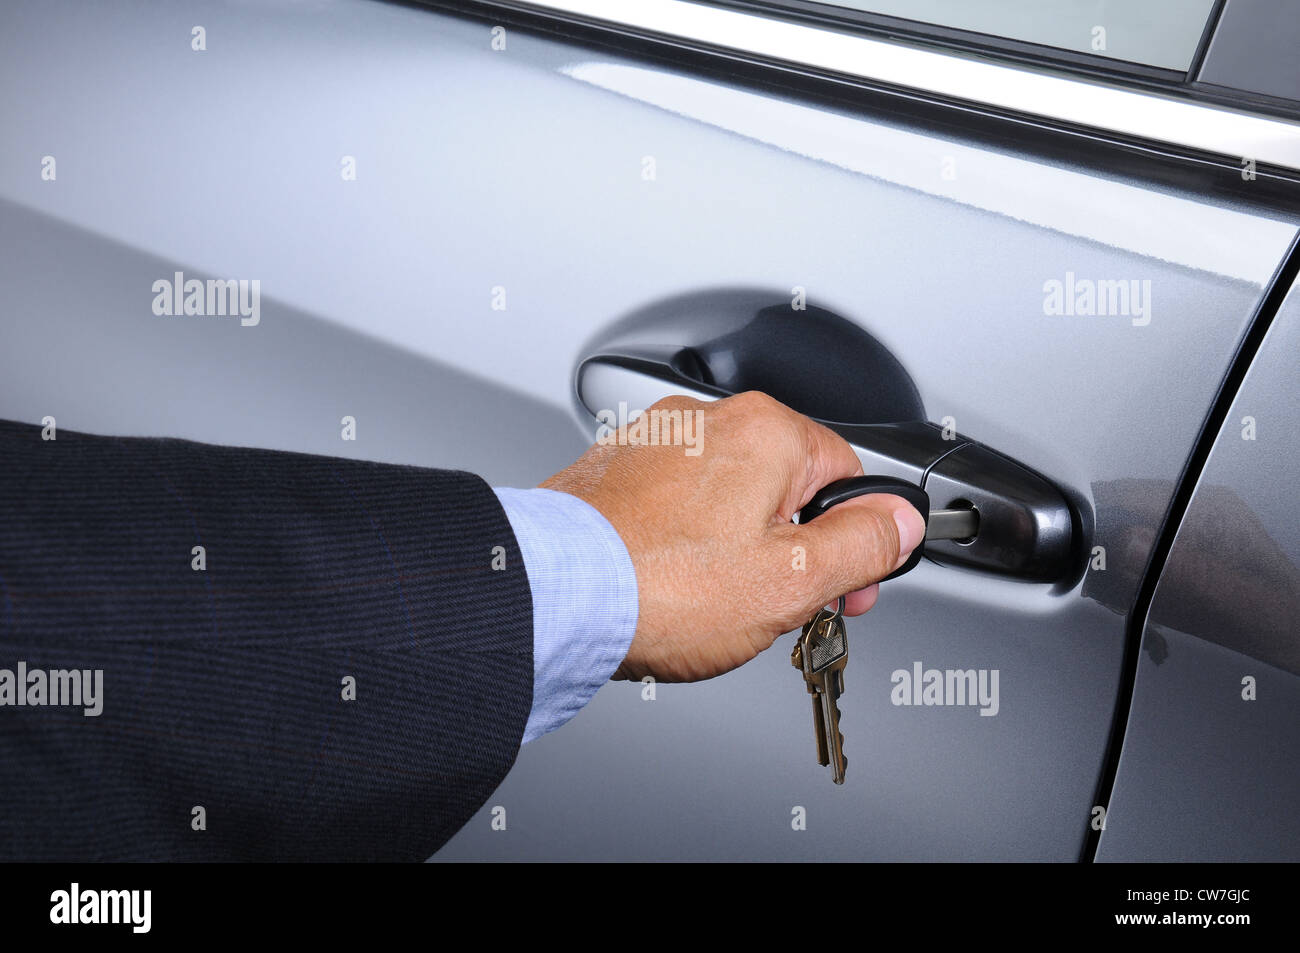 Libre de la main d'un homme de l'insertion d'une clé dans la serrure d'une voiture. Format horizontal. Voiture et l'homme sont méconnaissables. Banque D'Images